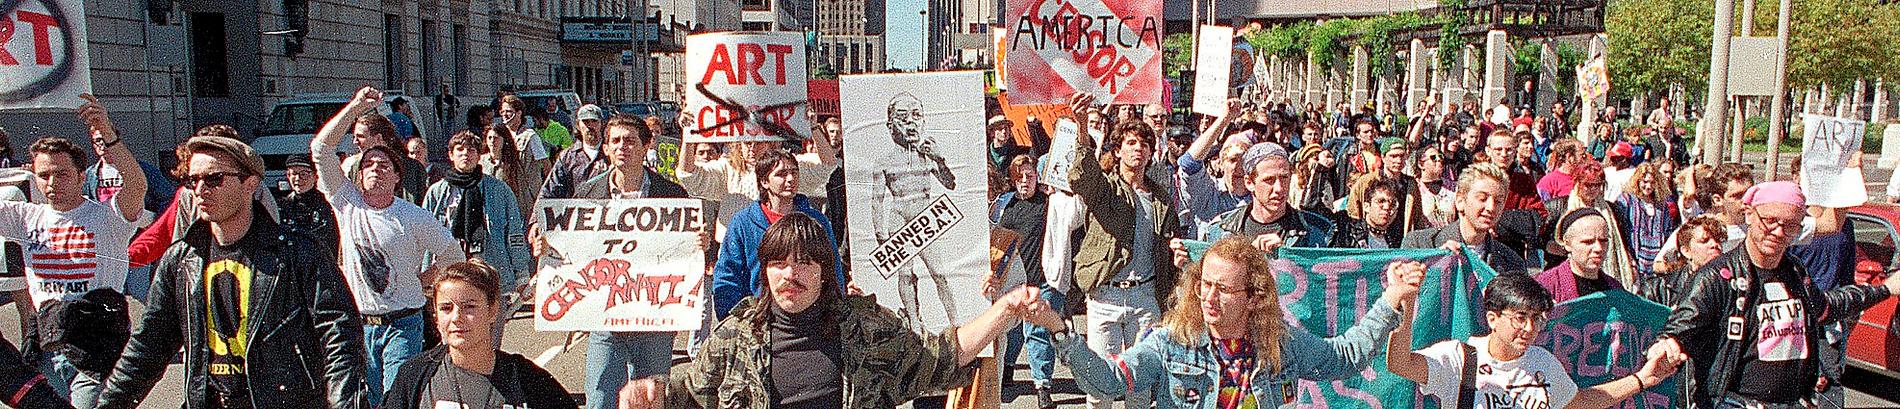 Demonstration i Cincinnati 1990 till stöd för stadens moderna museum som ställts inför rätta efter att visat Robert Mapplethorpes fotografier.